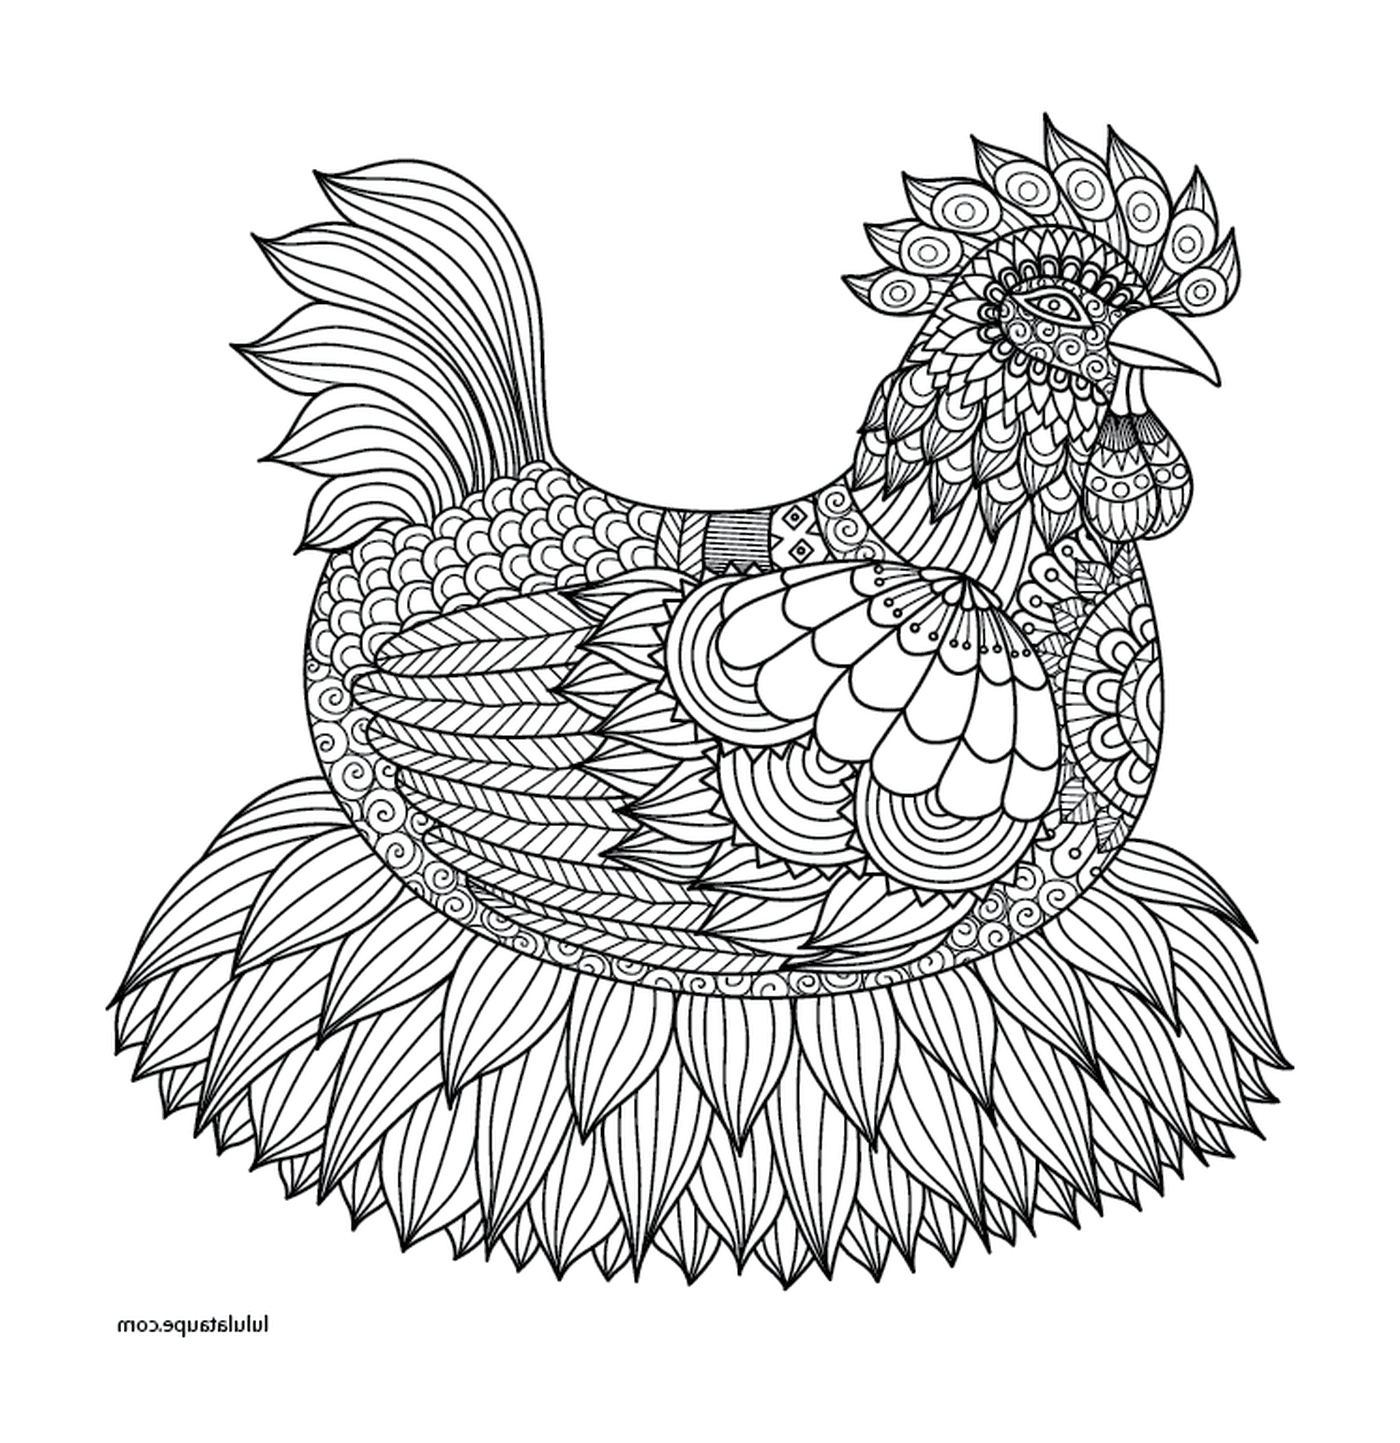  Pollo adulto elegantemente progettato 